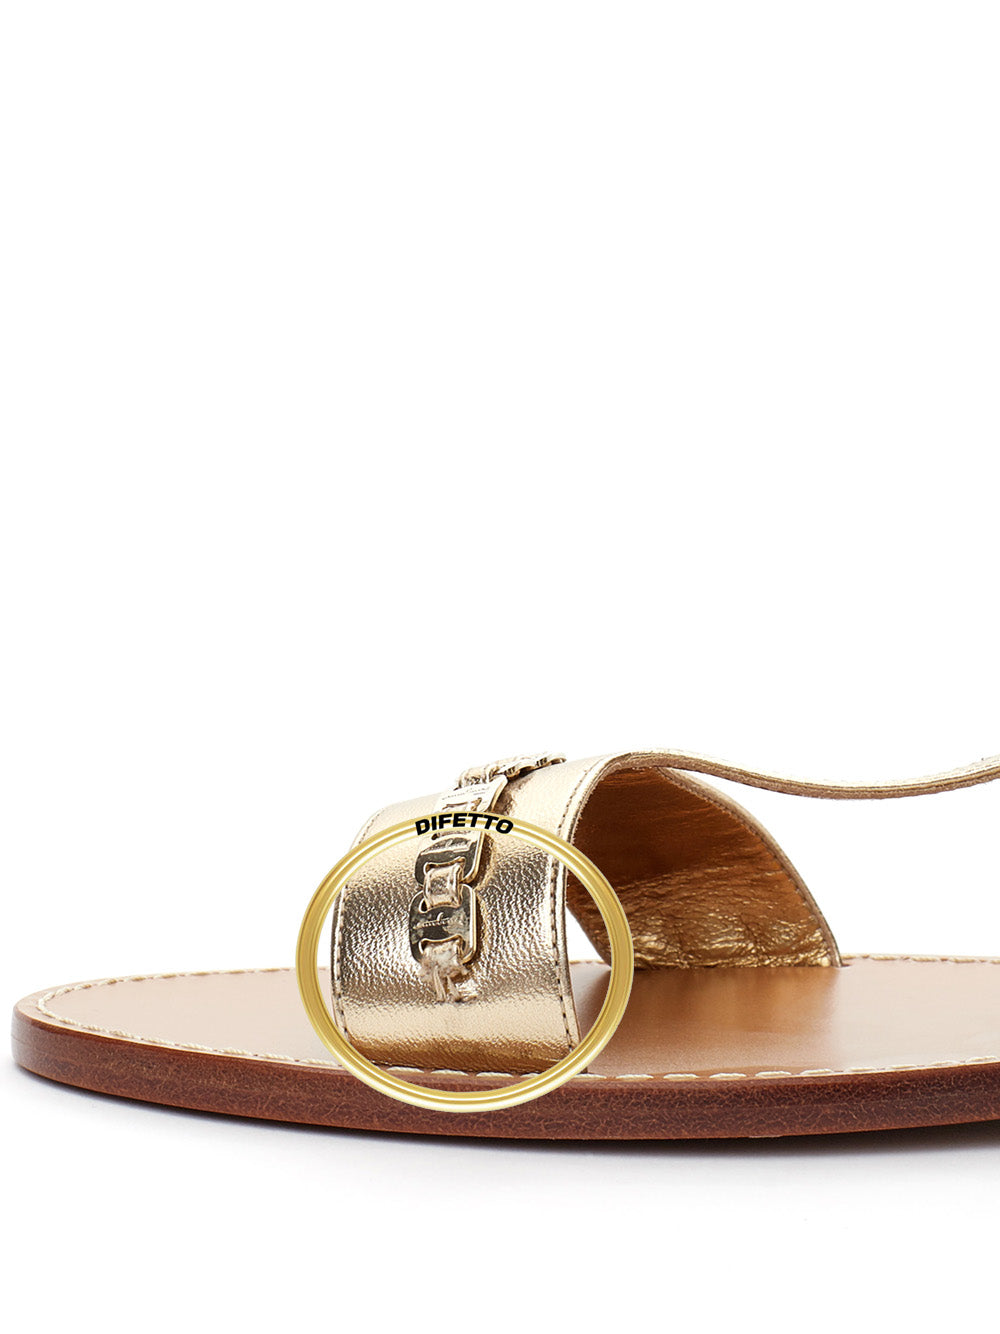 Salvatore Ferragamo Varina Gold Leather Sandals